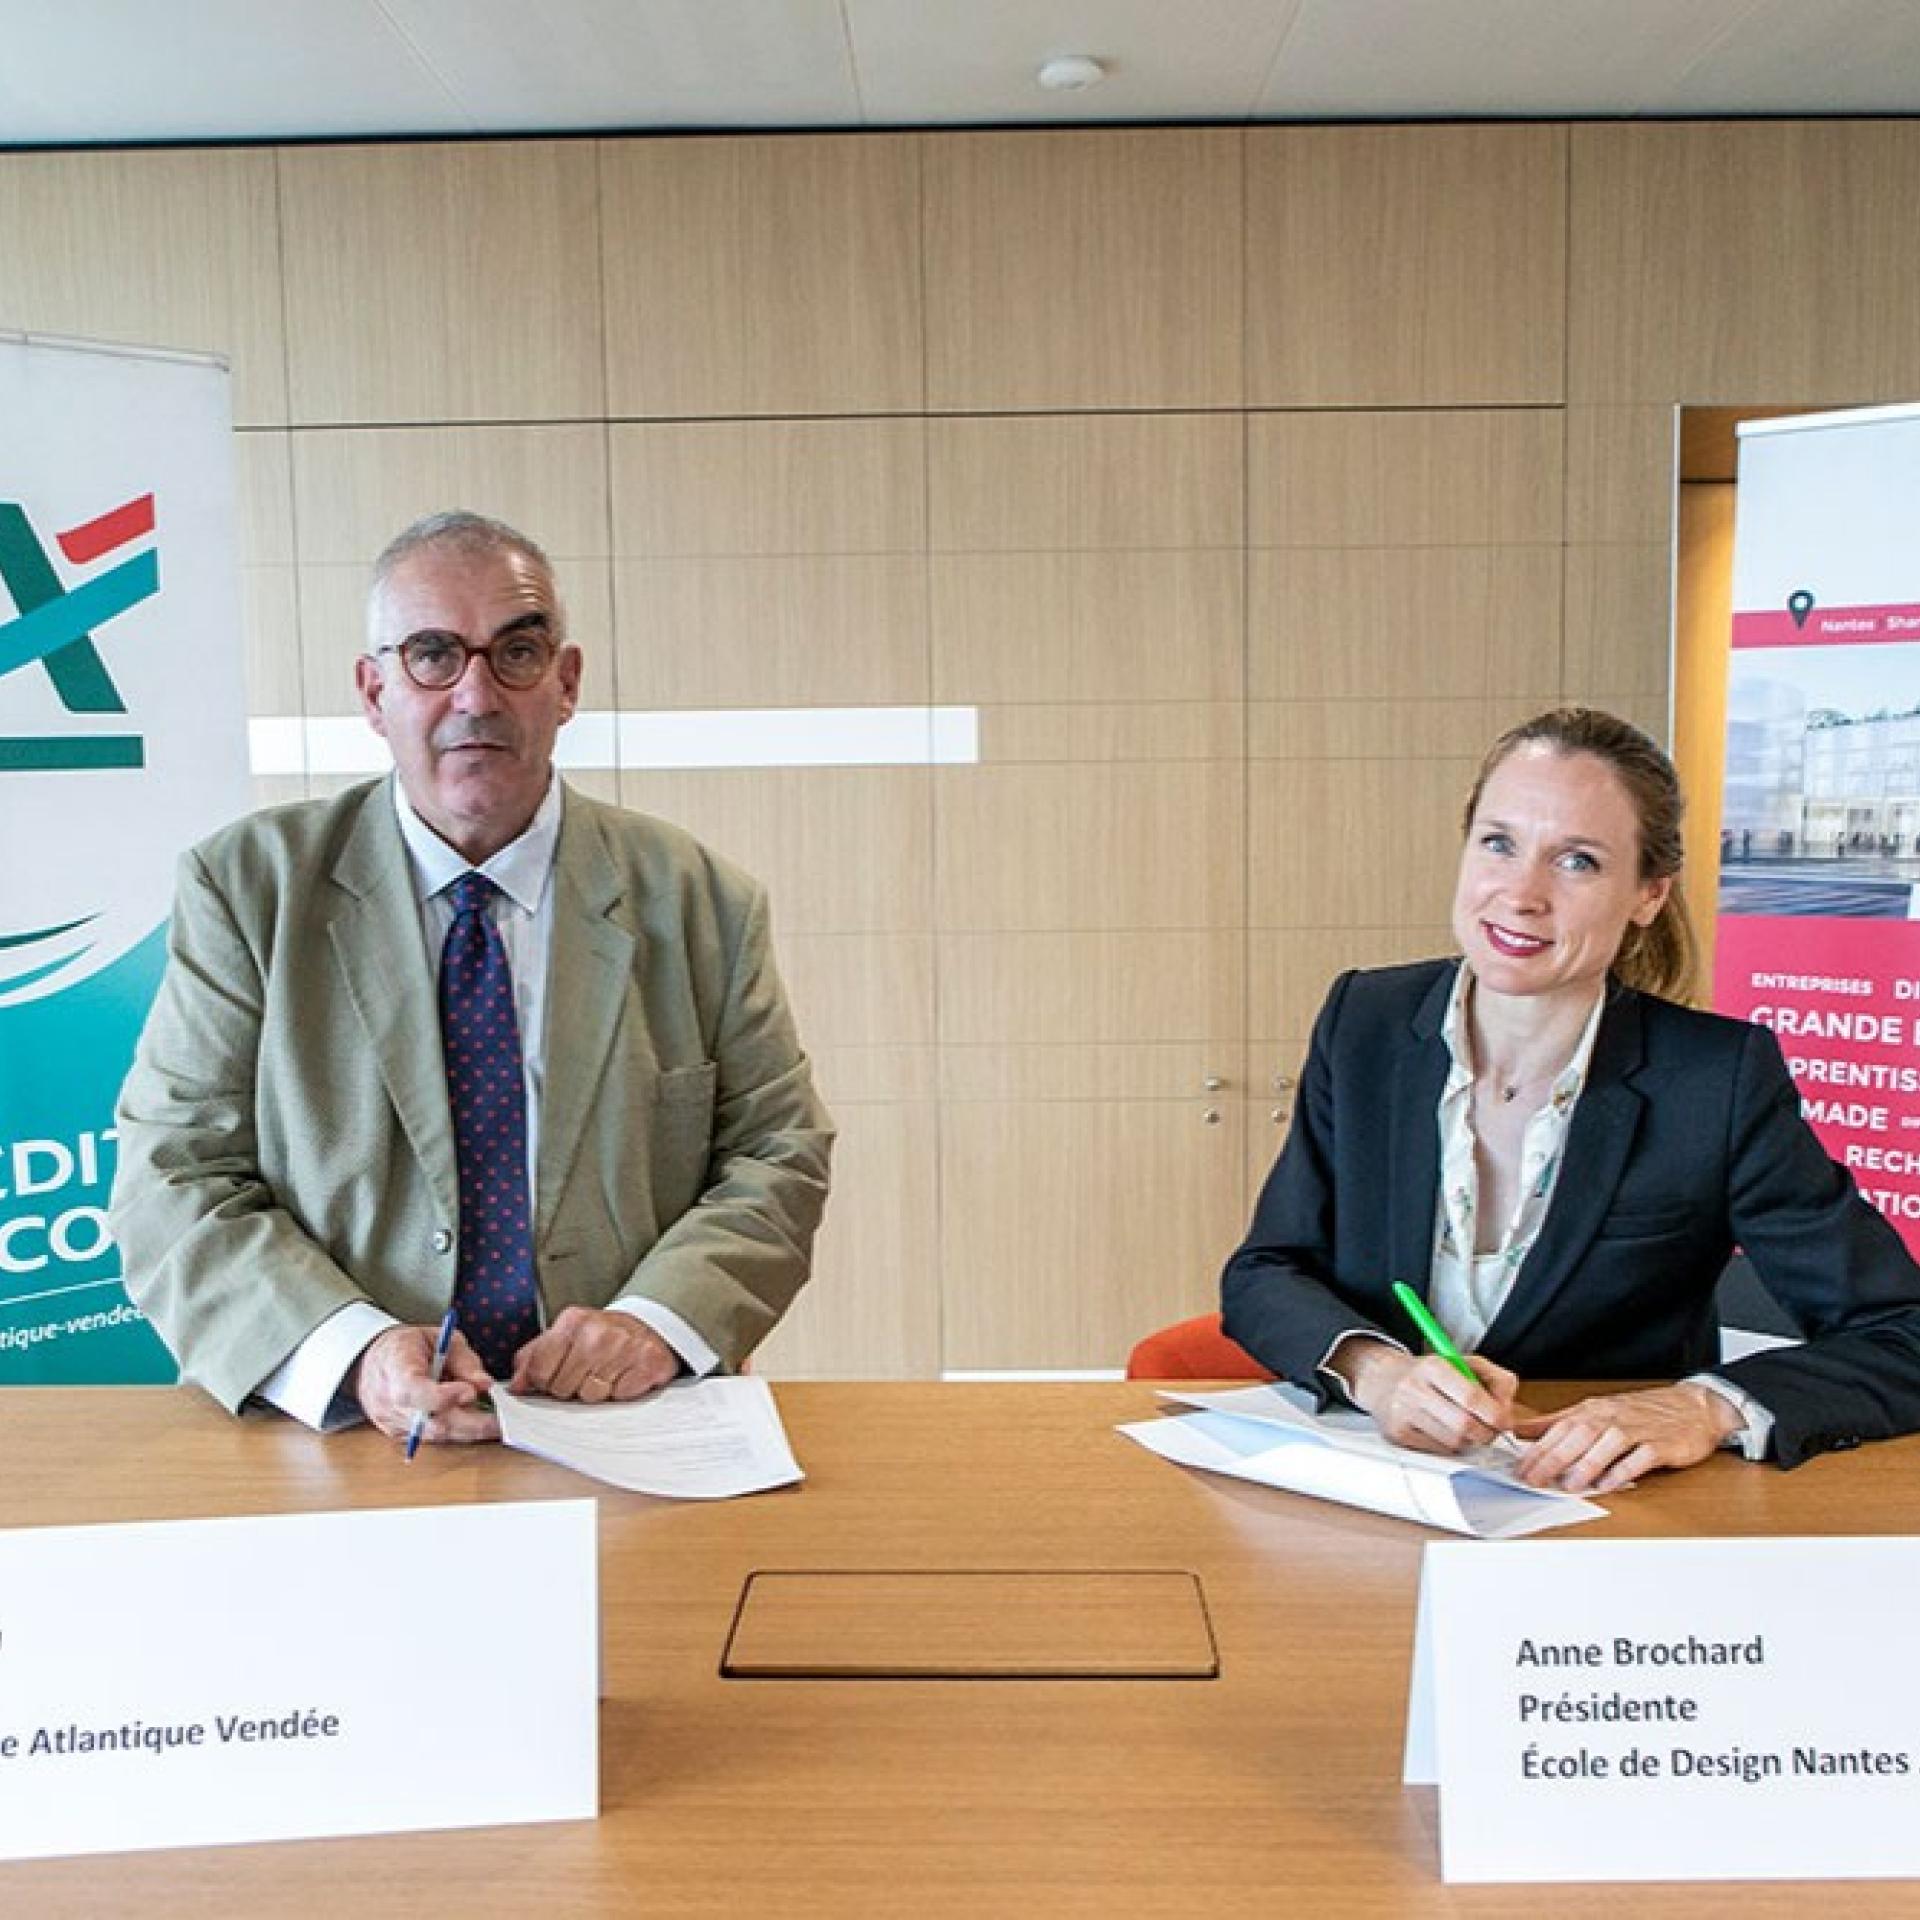 Crédit Agricole Atlantique Vendée and L’École de design Nantes Atlantique join forces and sign a sponsorship agreement